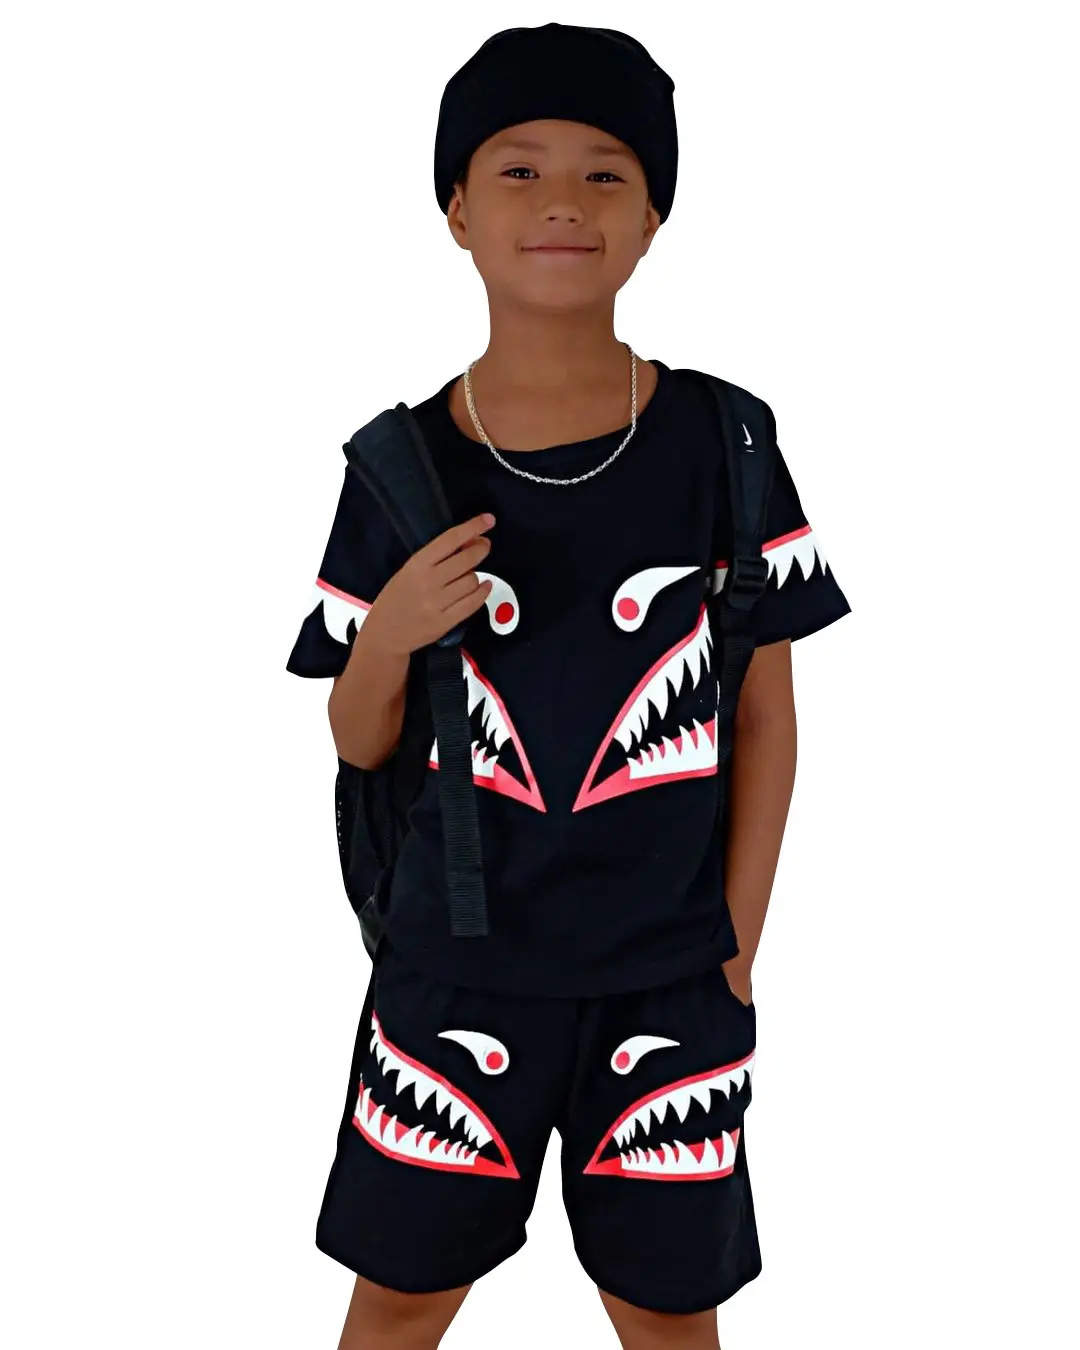 ملابس أطفال أوروبية وأمريكية تيشيرت للأولاد برسوم كارتونية مجموعة ملابس للأطفال مطبوع عليها أحرف Hip Hop مكونة من قطعتين